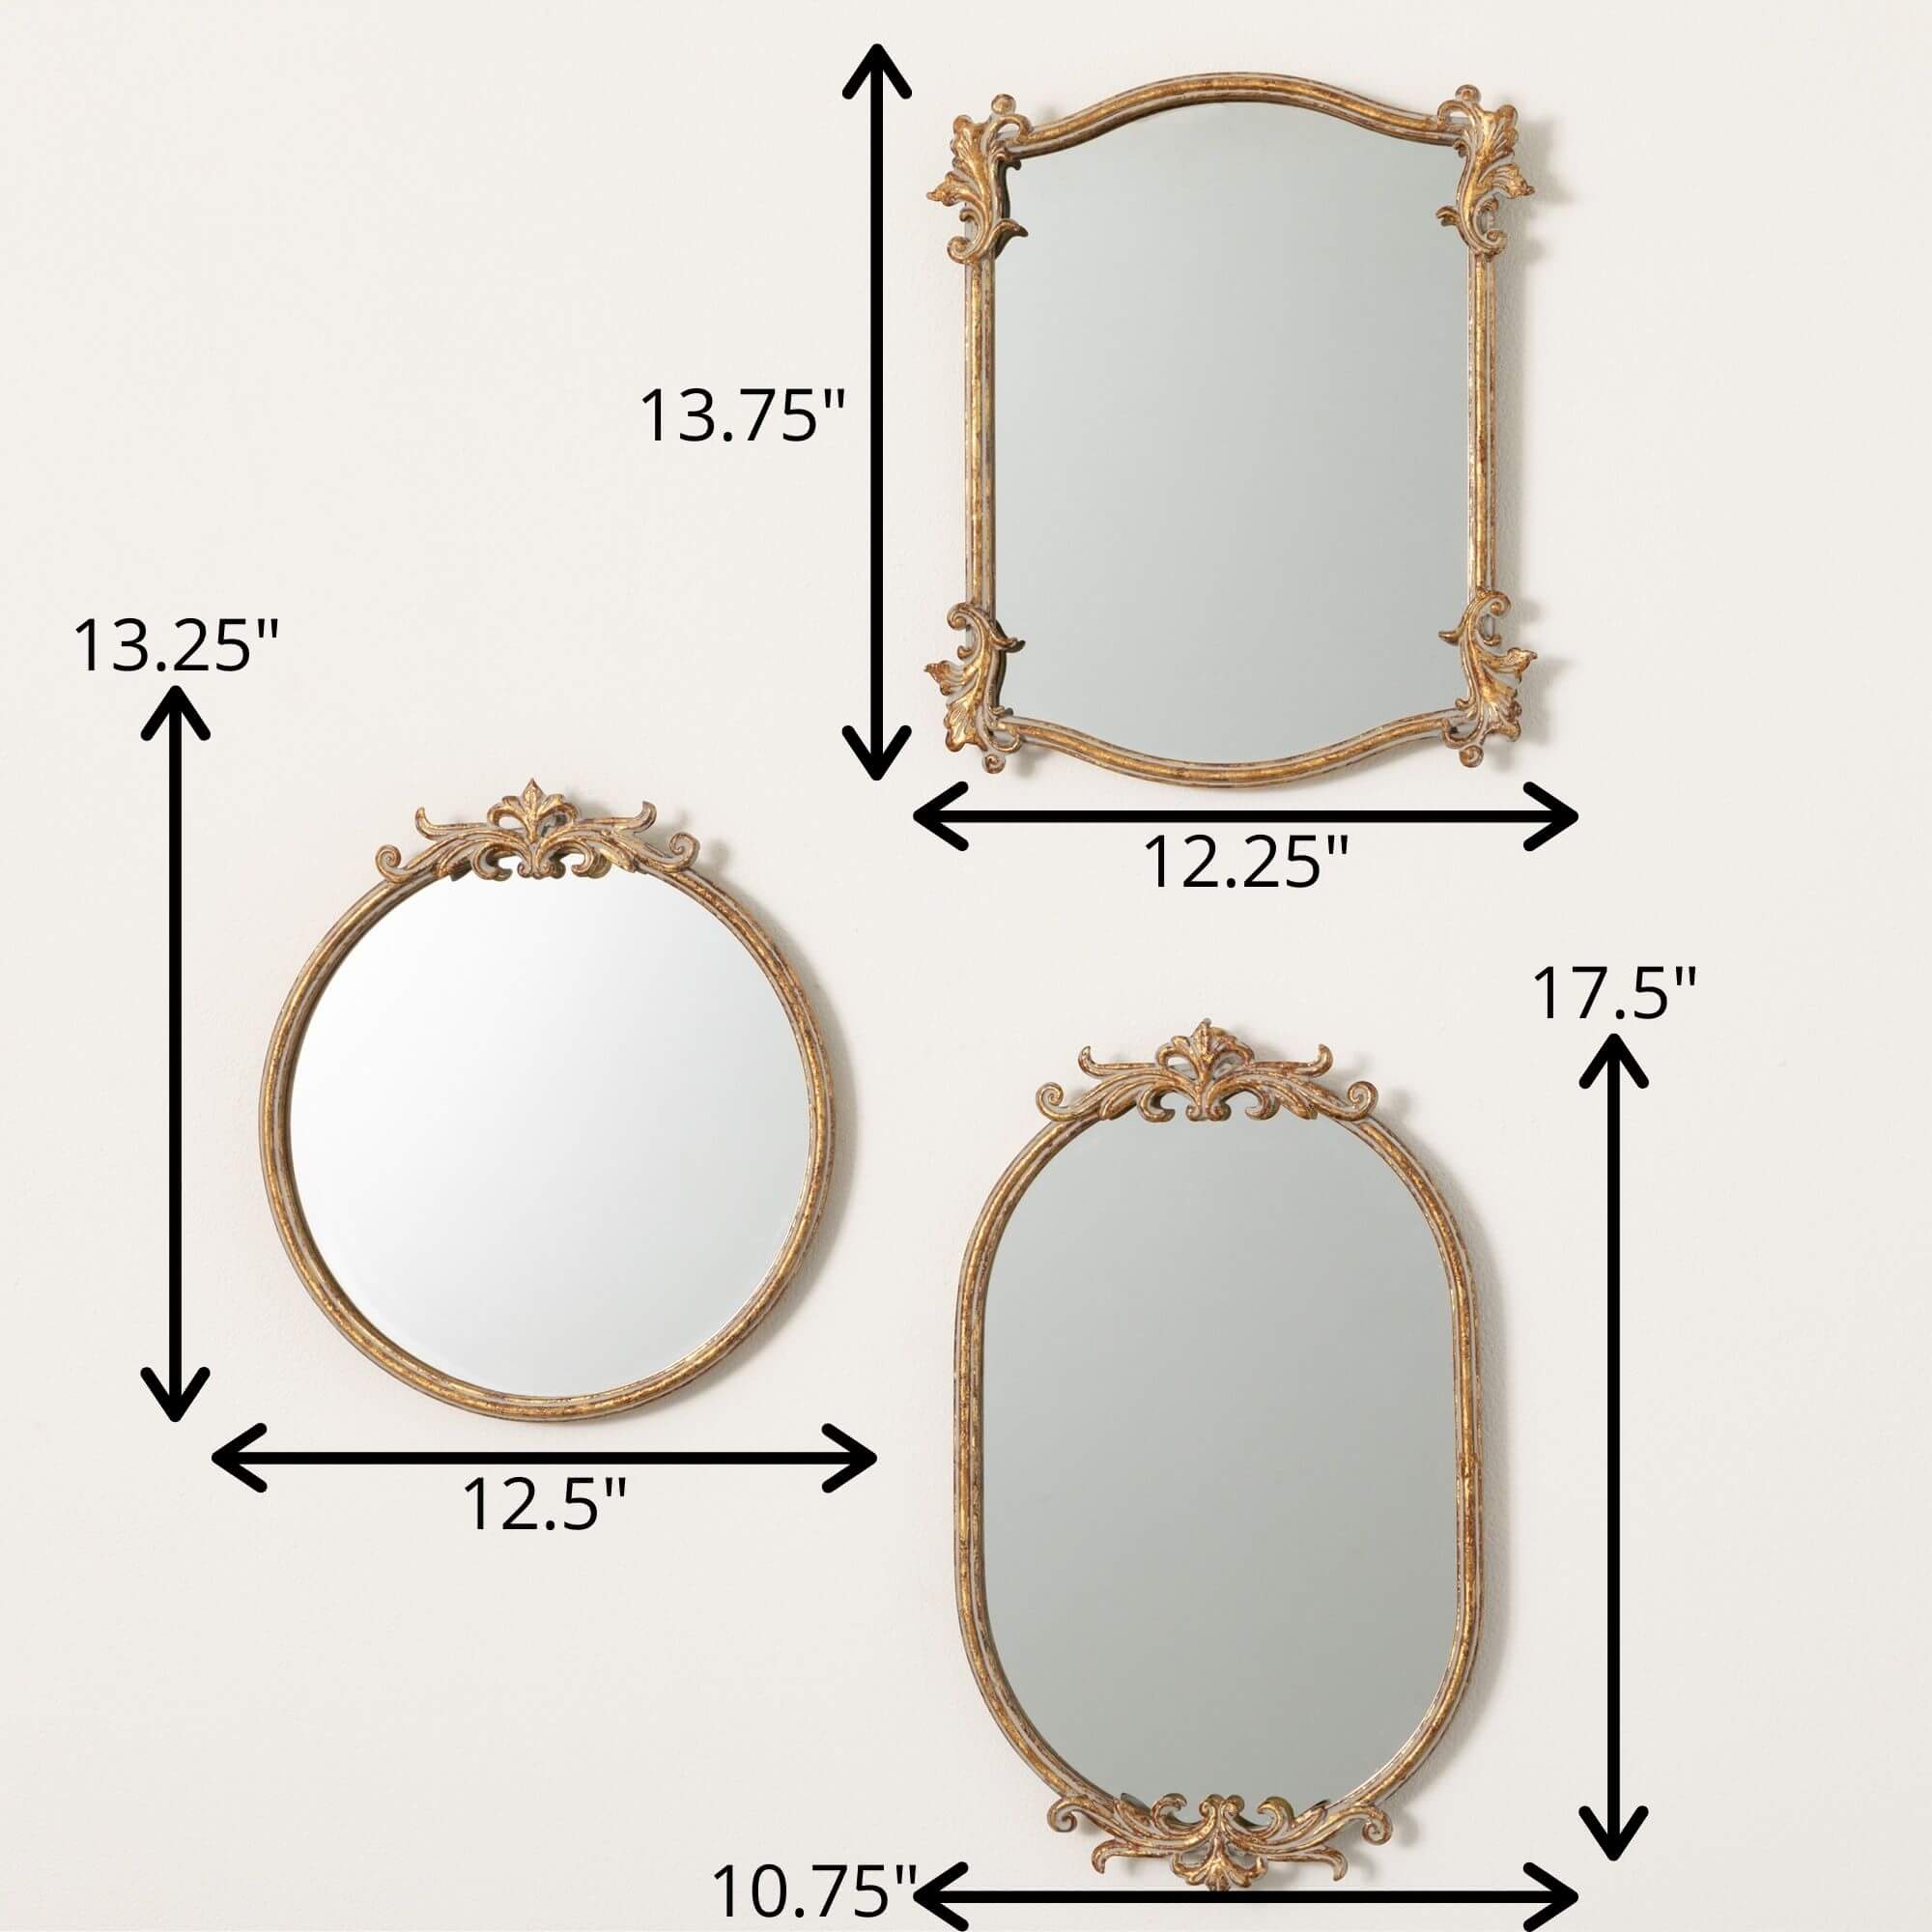 Heirloom Ornate Mirror, Style Options